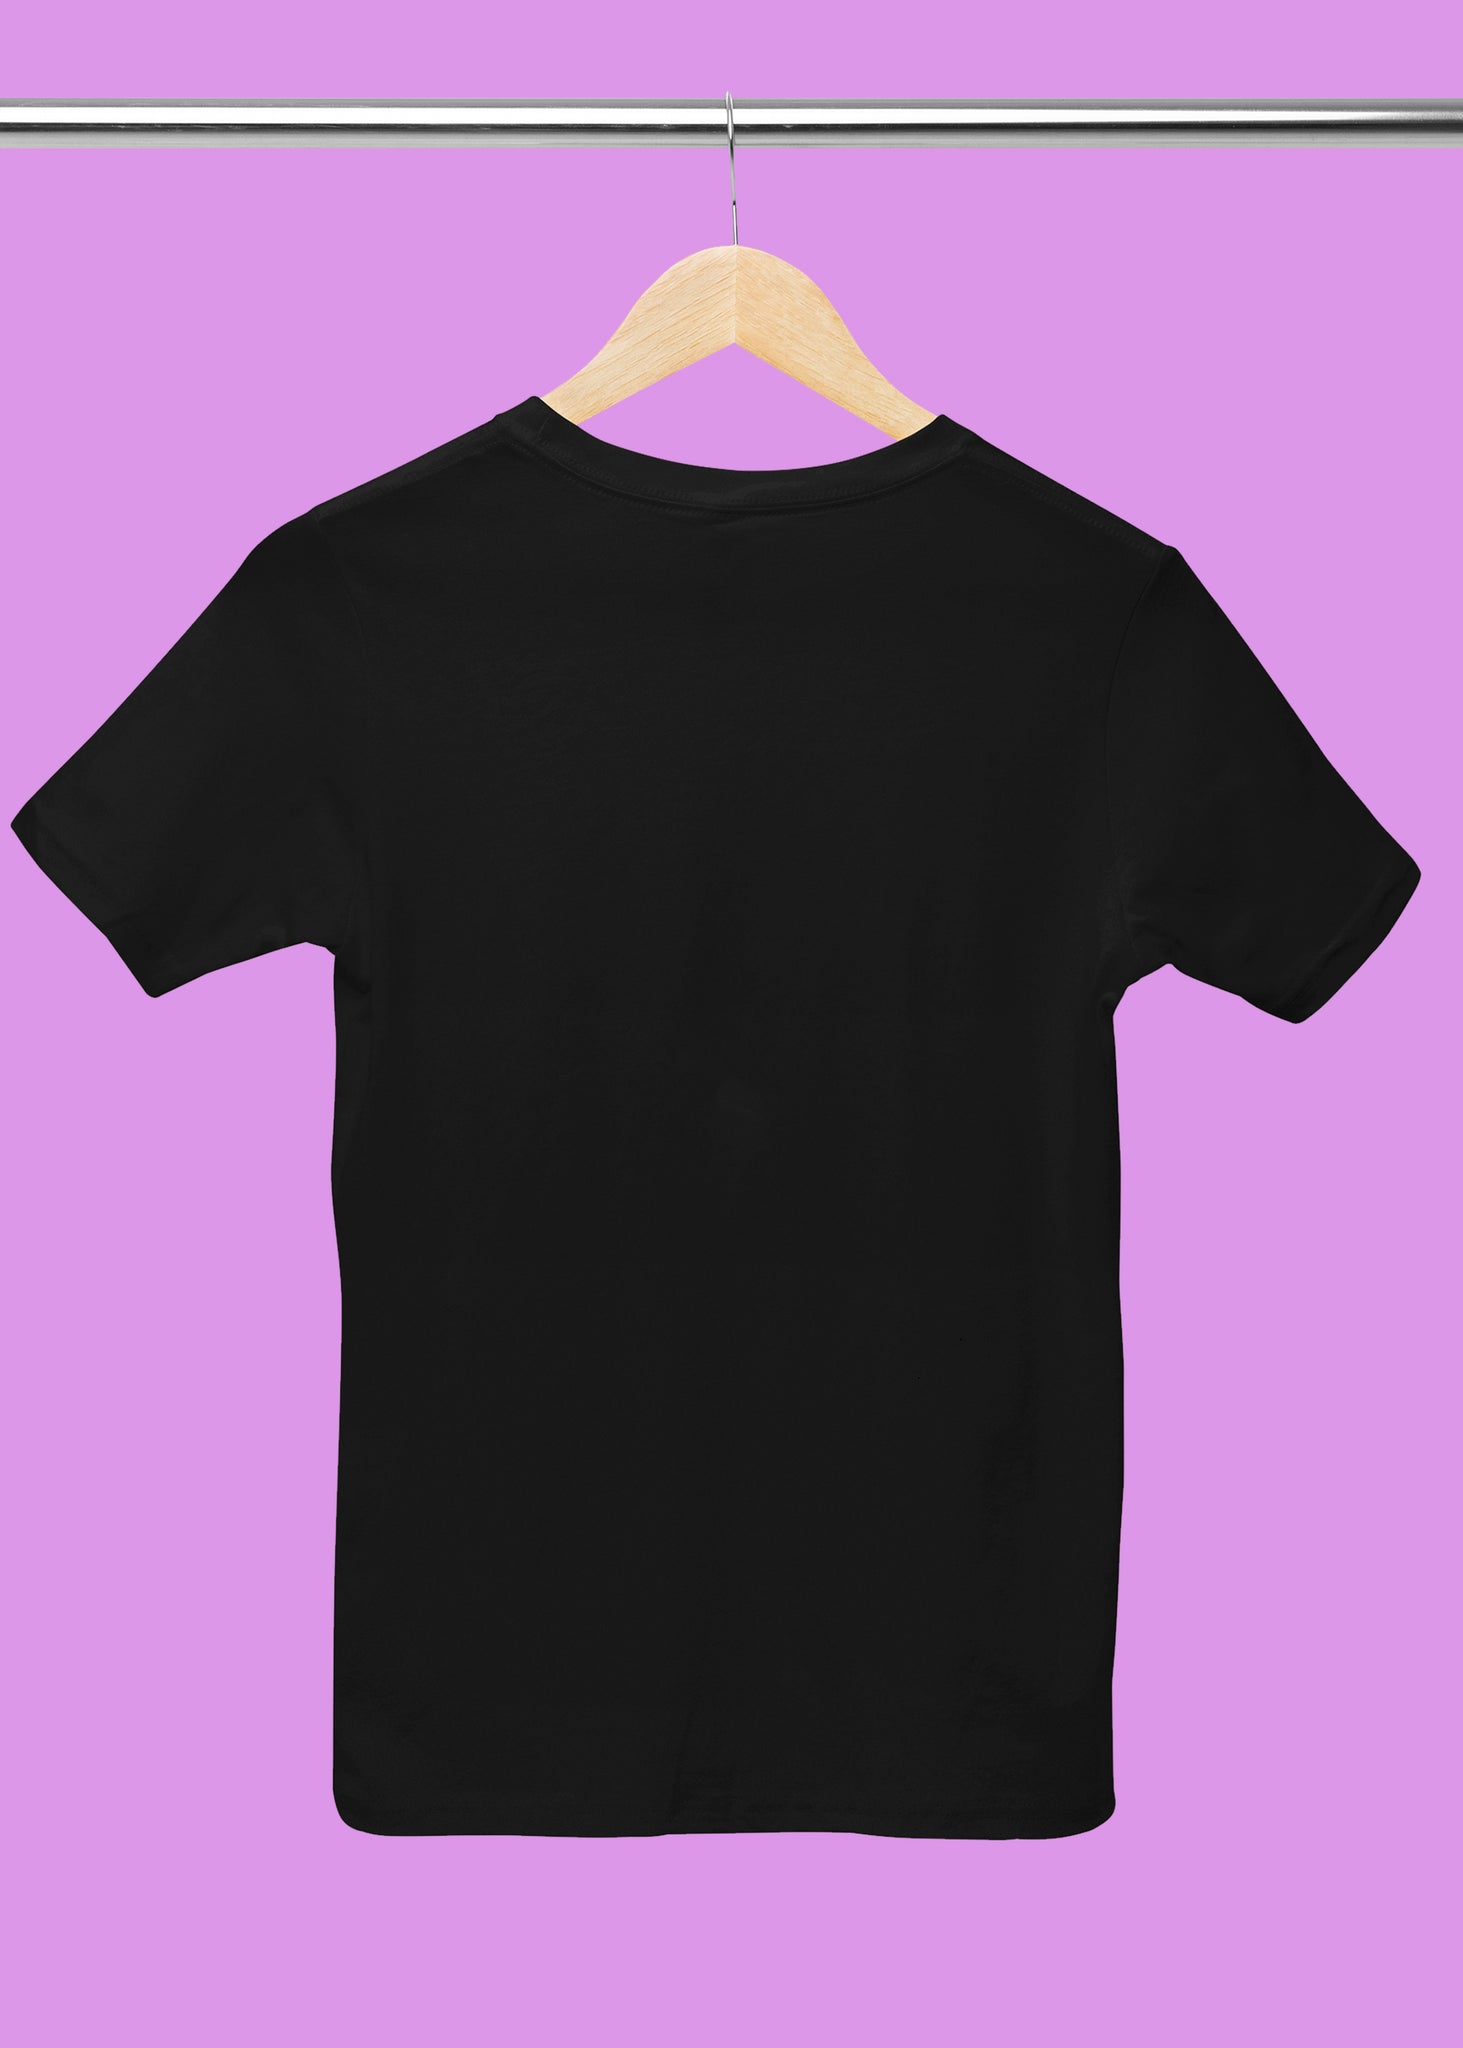 Portgas D. Ace  T-Shirt